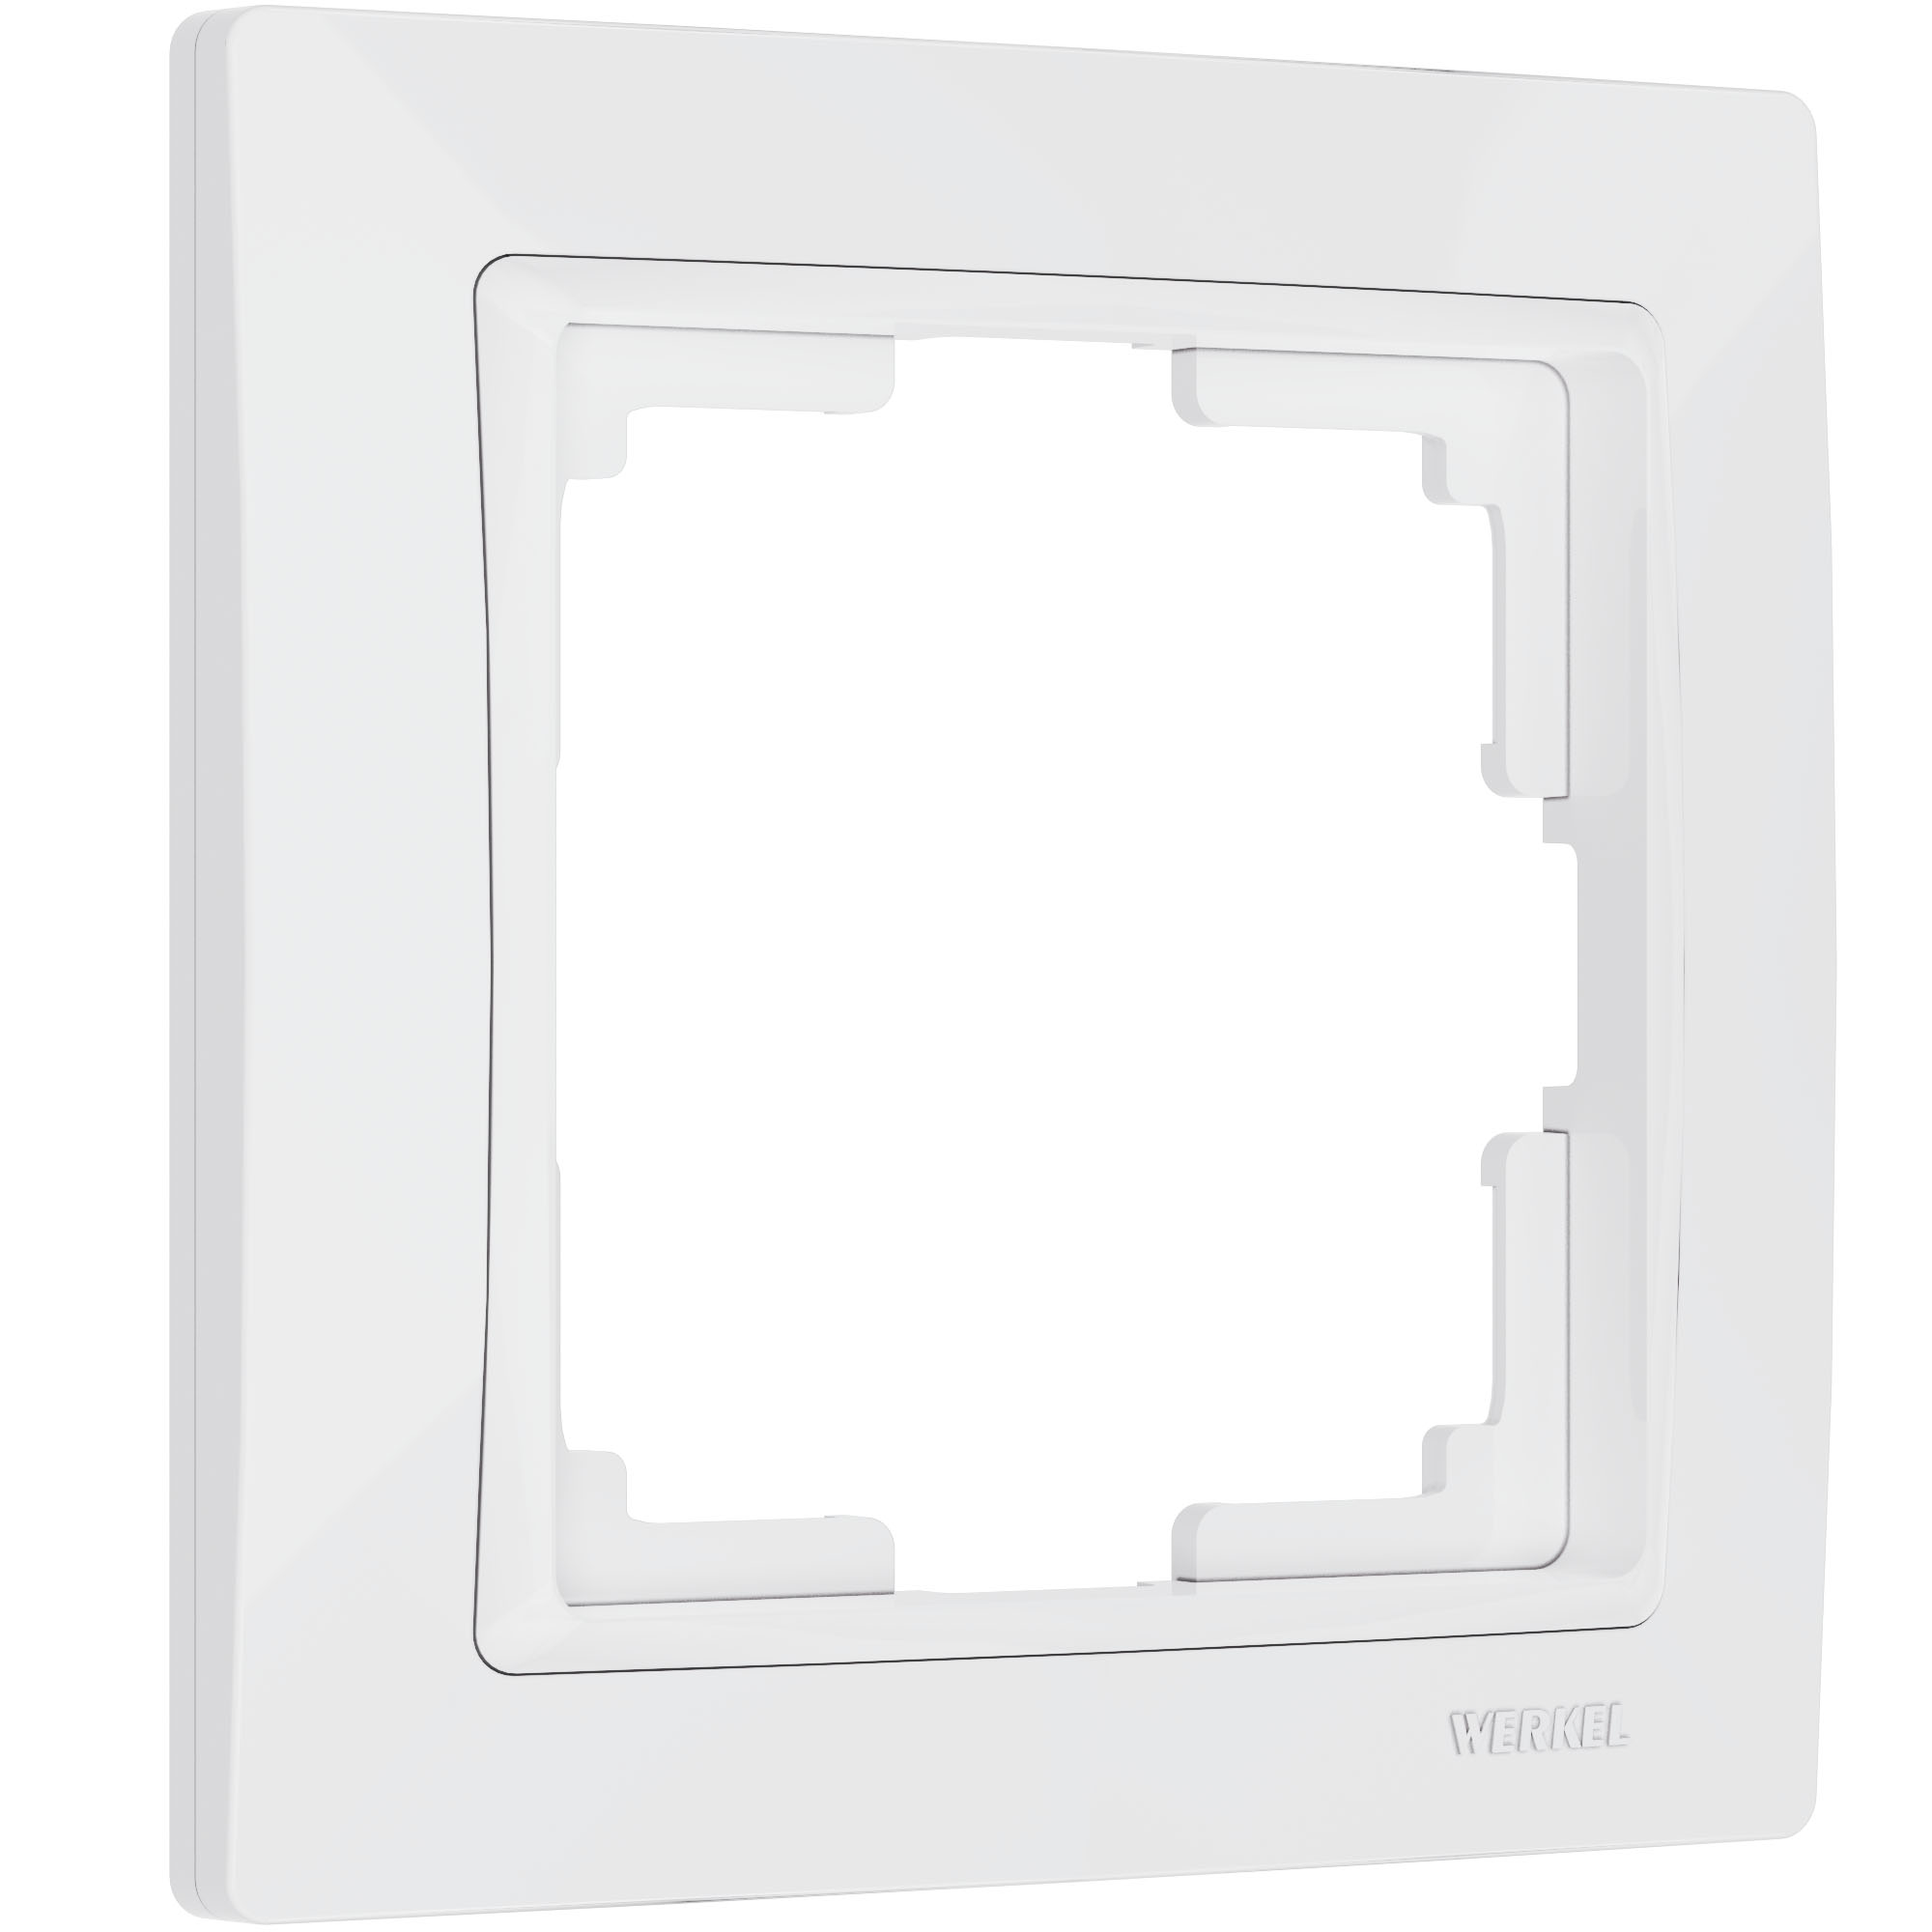 Рамка для розетки / выключателя на 1 пост  Werkel W0012001 Snabb Basic белый пластик